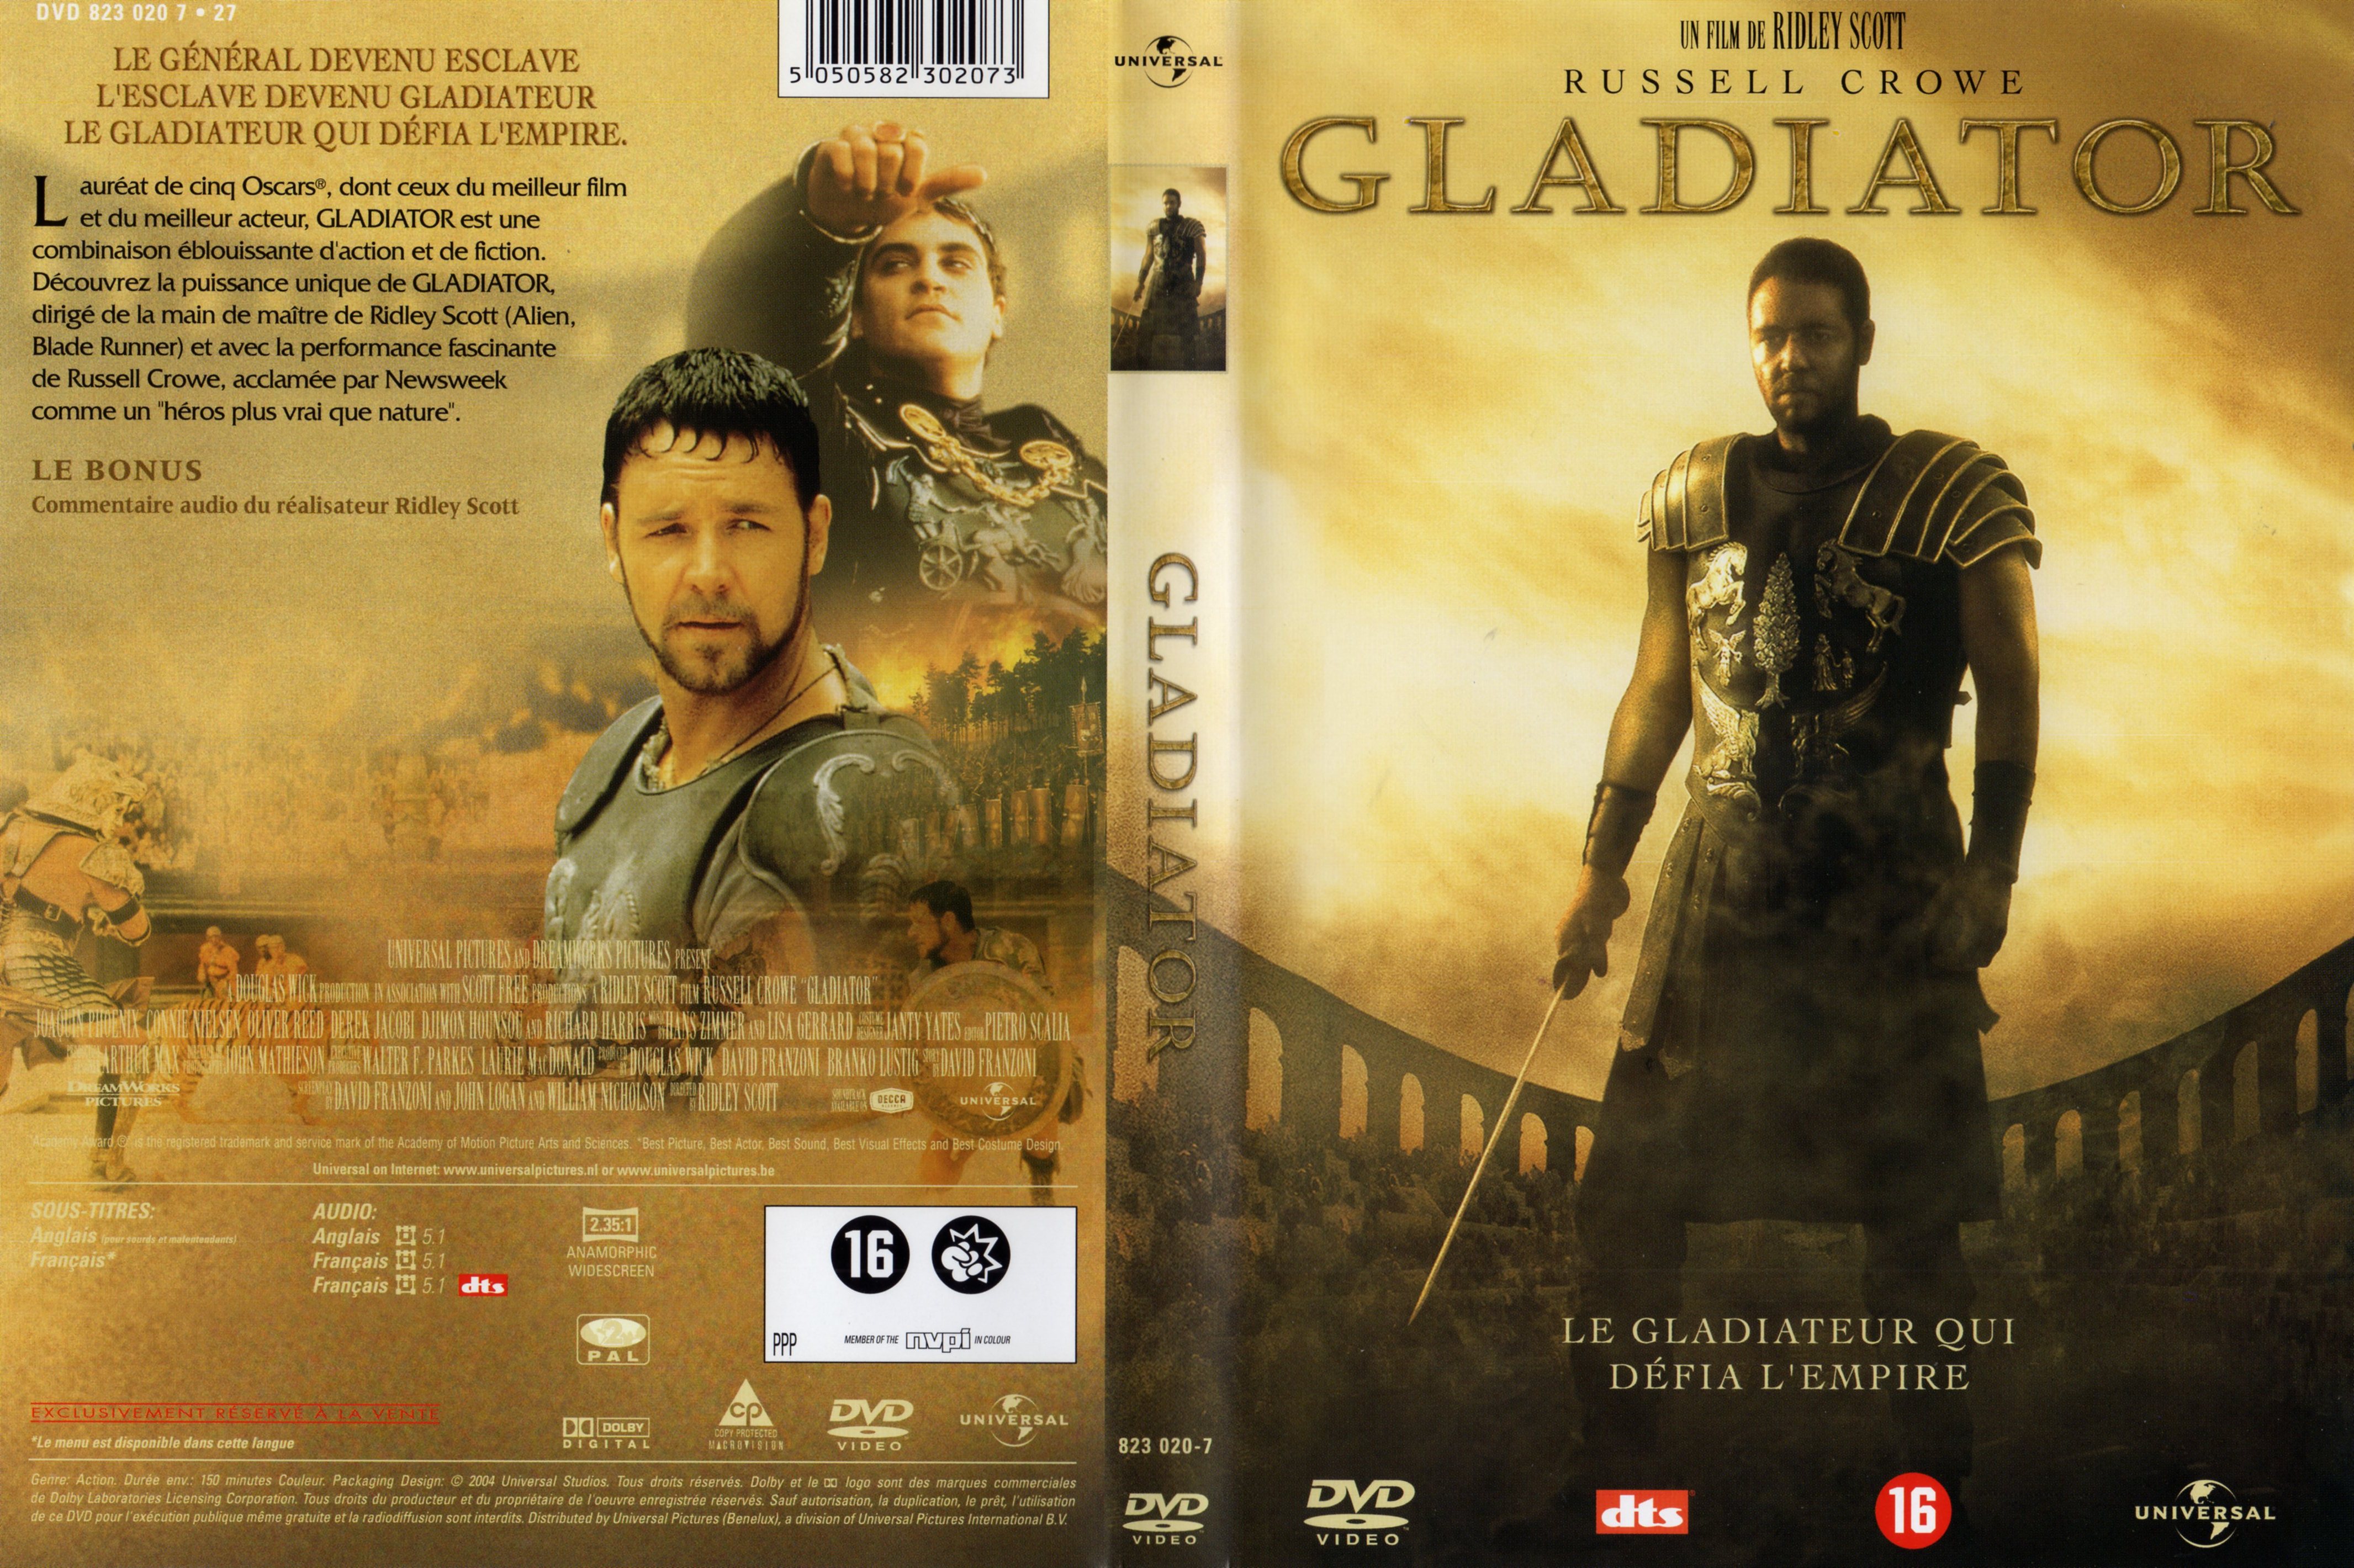 Jaquette DVD Gladiator v4